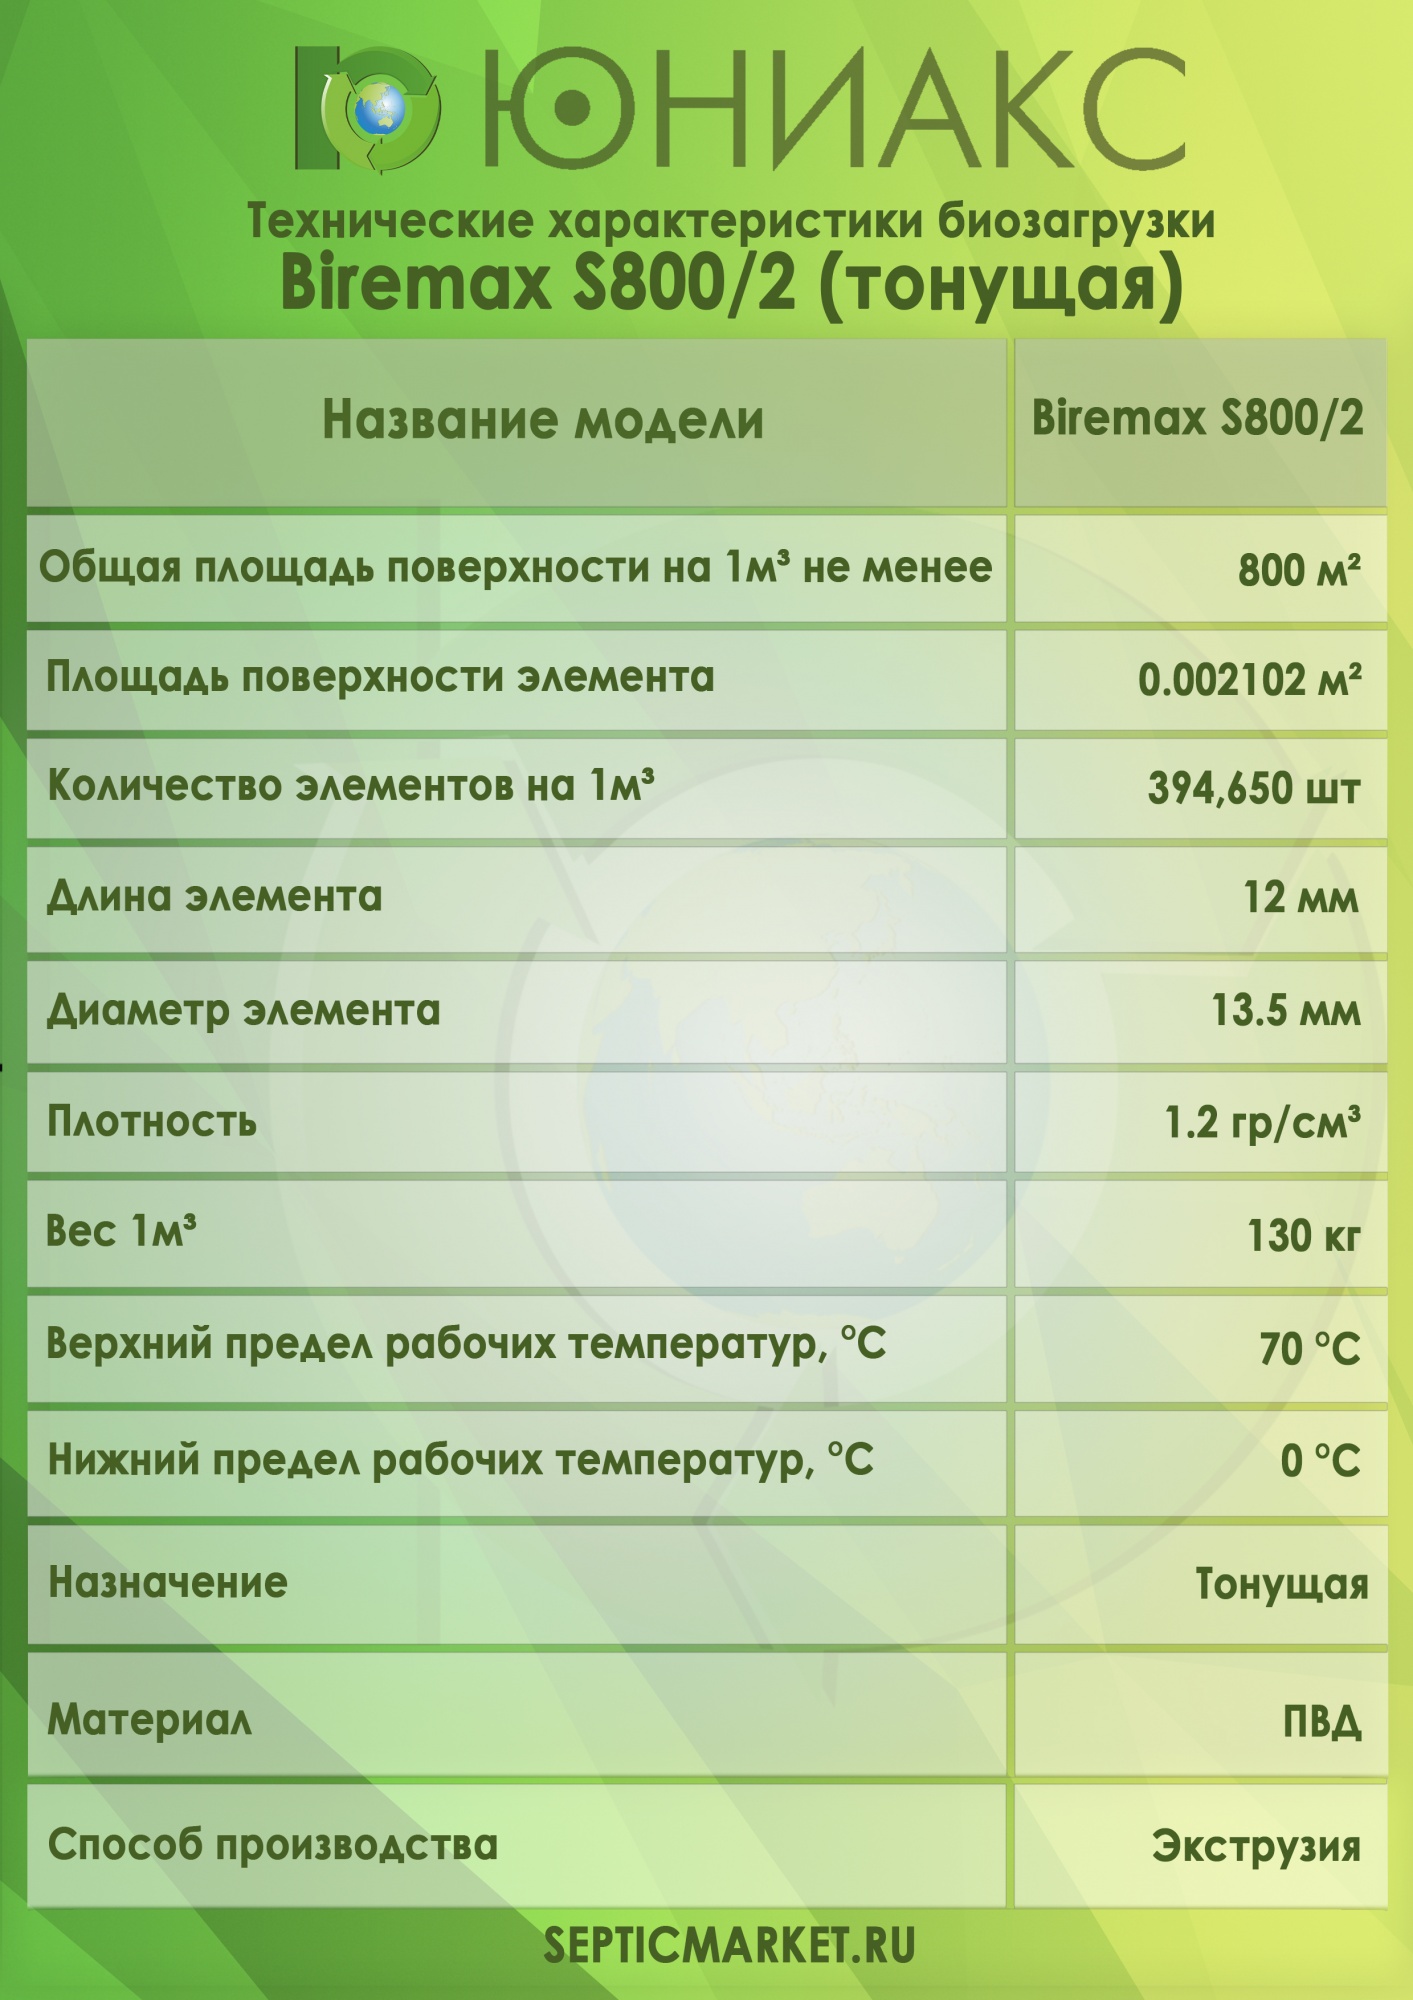 Тонущая биозагрузка Биремакс Эксперт S800/2 (50 литров)